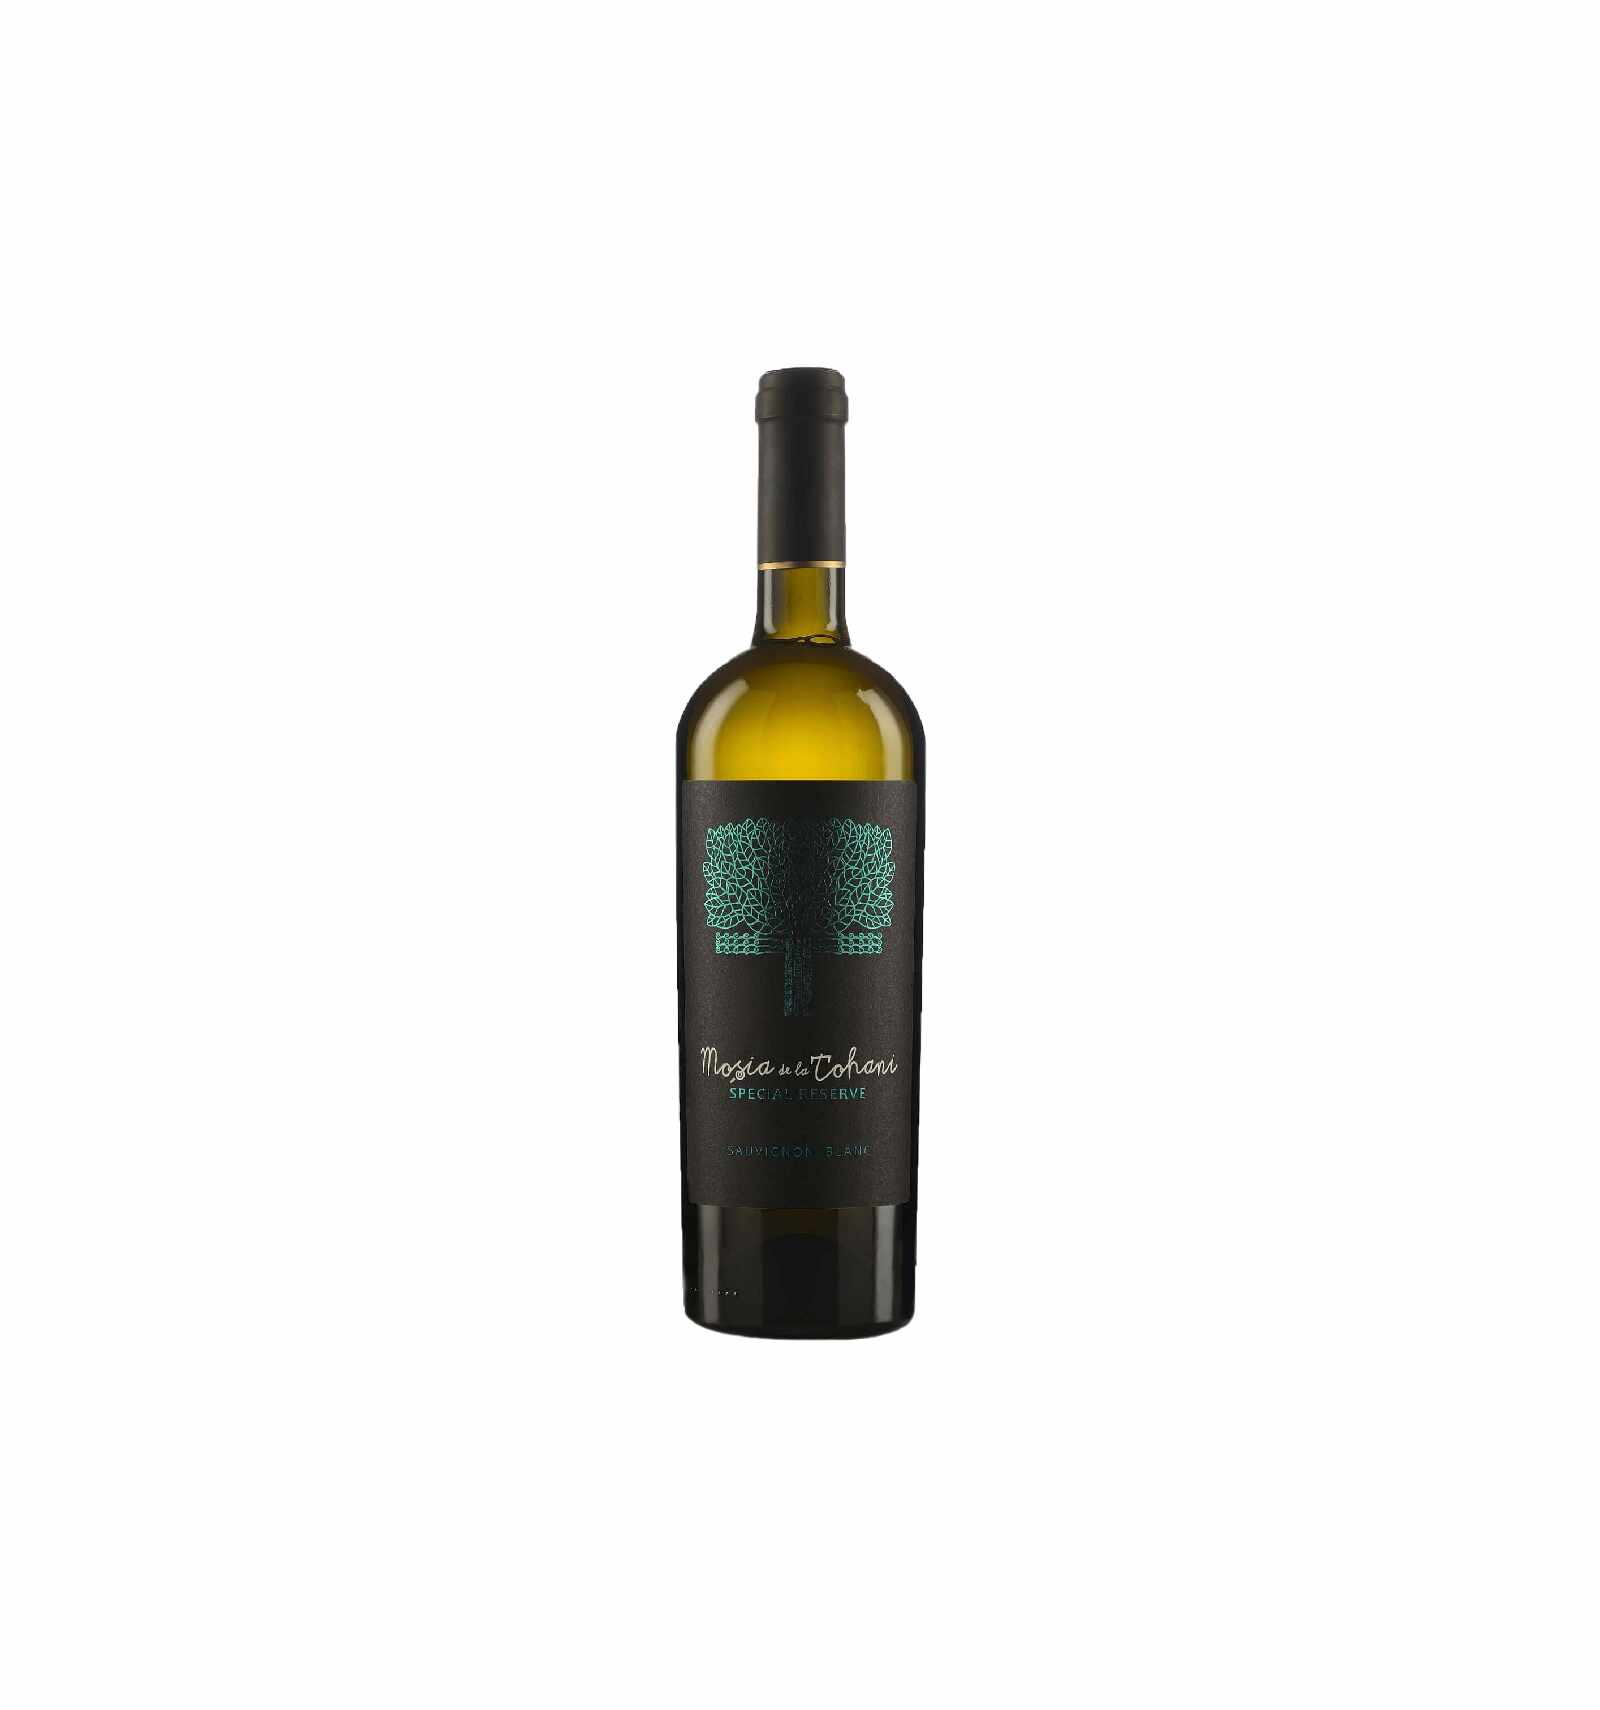 Vin alb sec, Sauvignon Blanc, Mosia Tohani Special Reserve, 13.5% alc, 0.75L, Romania